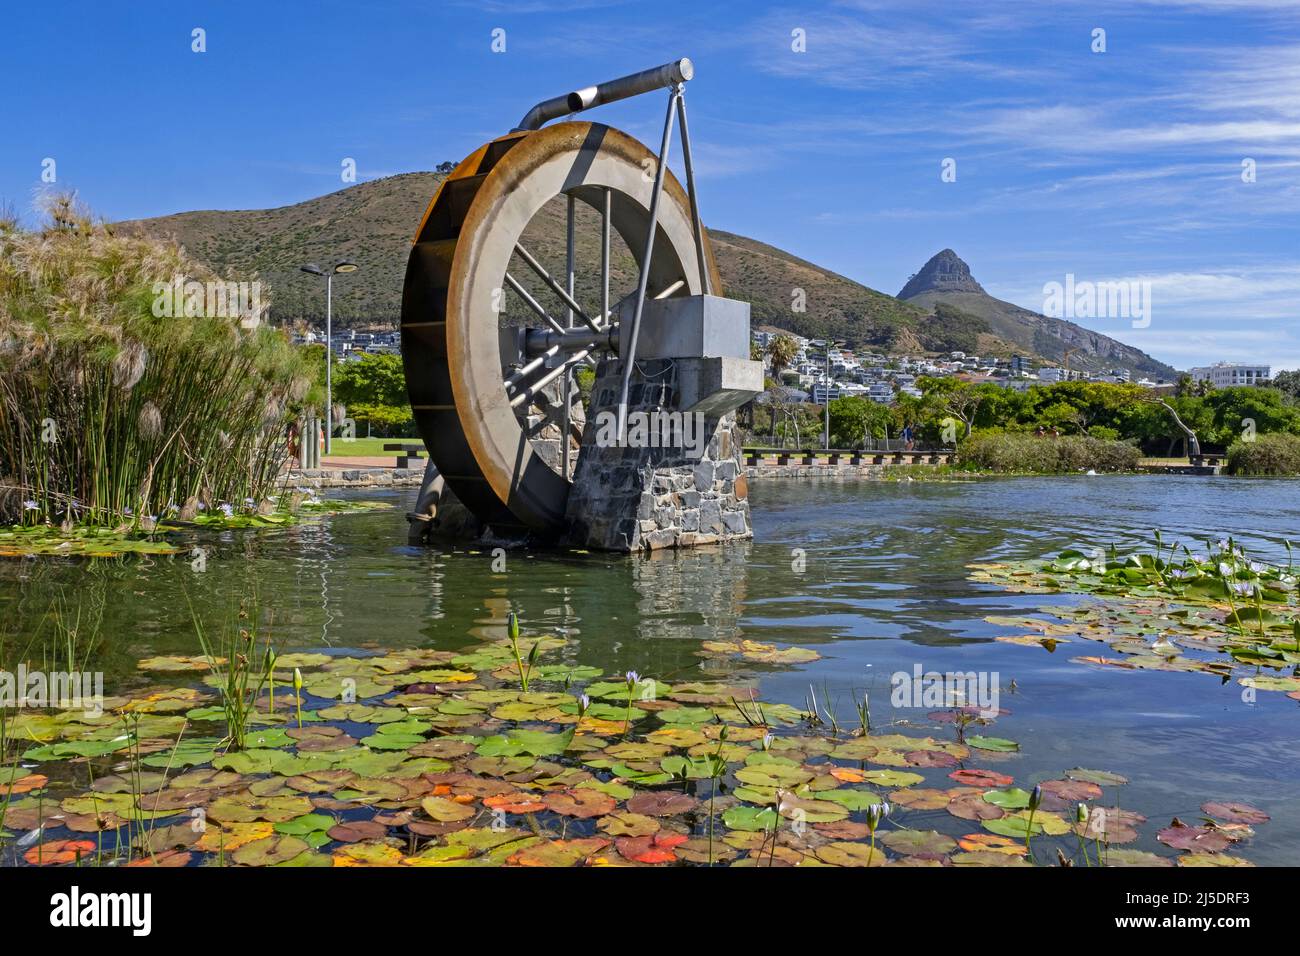 Waterwheel au parc urbain de Green point et signal Hill / Seinheuwel au loin, le Cap / Kaapstad, province du Cap occidental, Afrique du Sud Banque D'Images